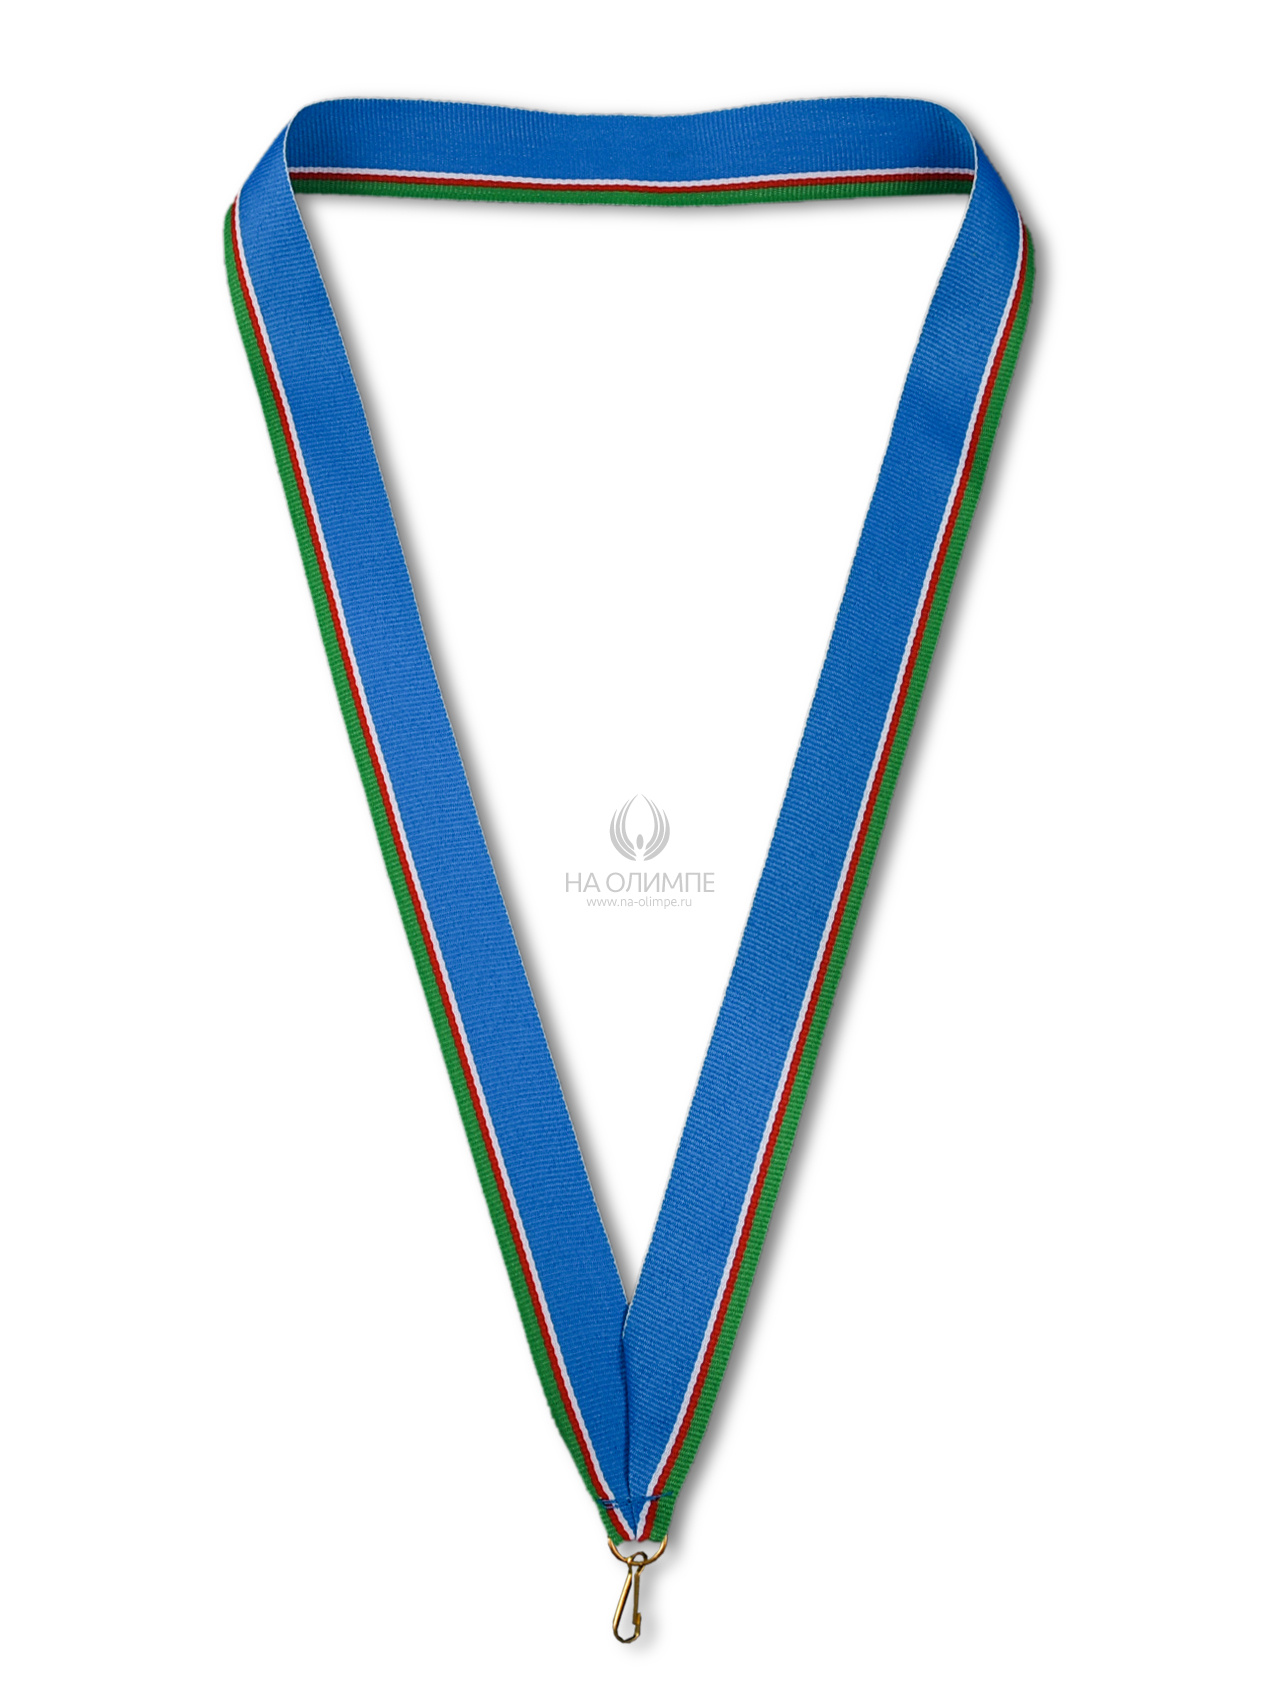 Лента для медали (Саха), ширина ленты 22 мм